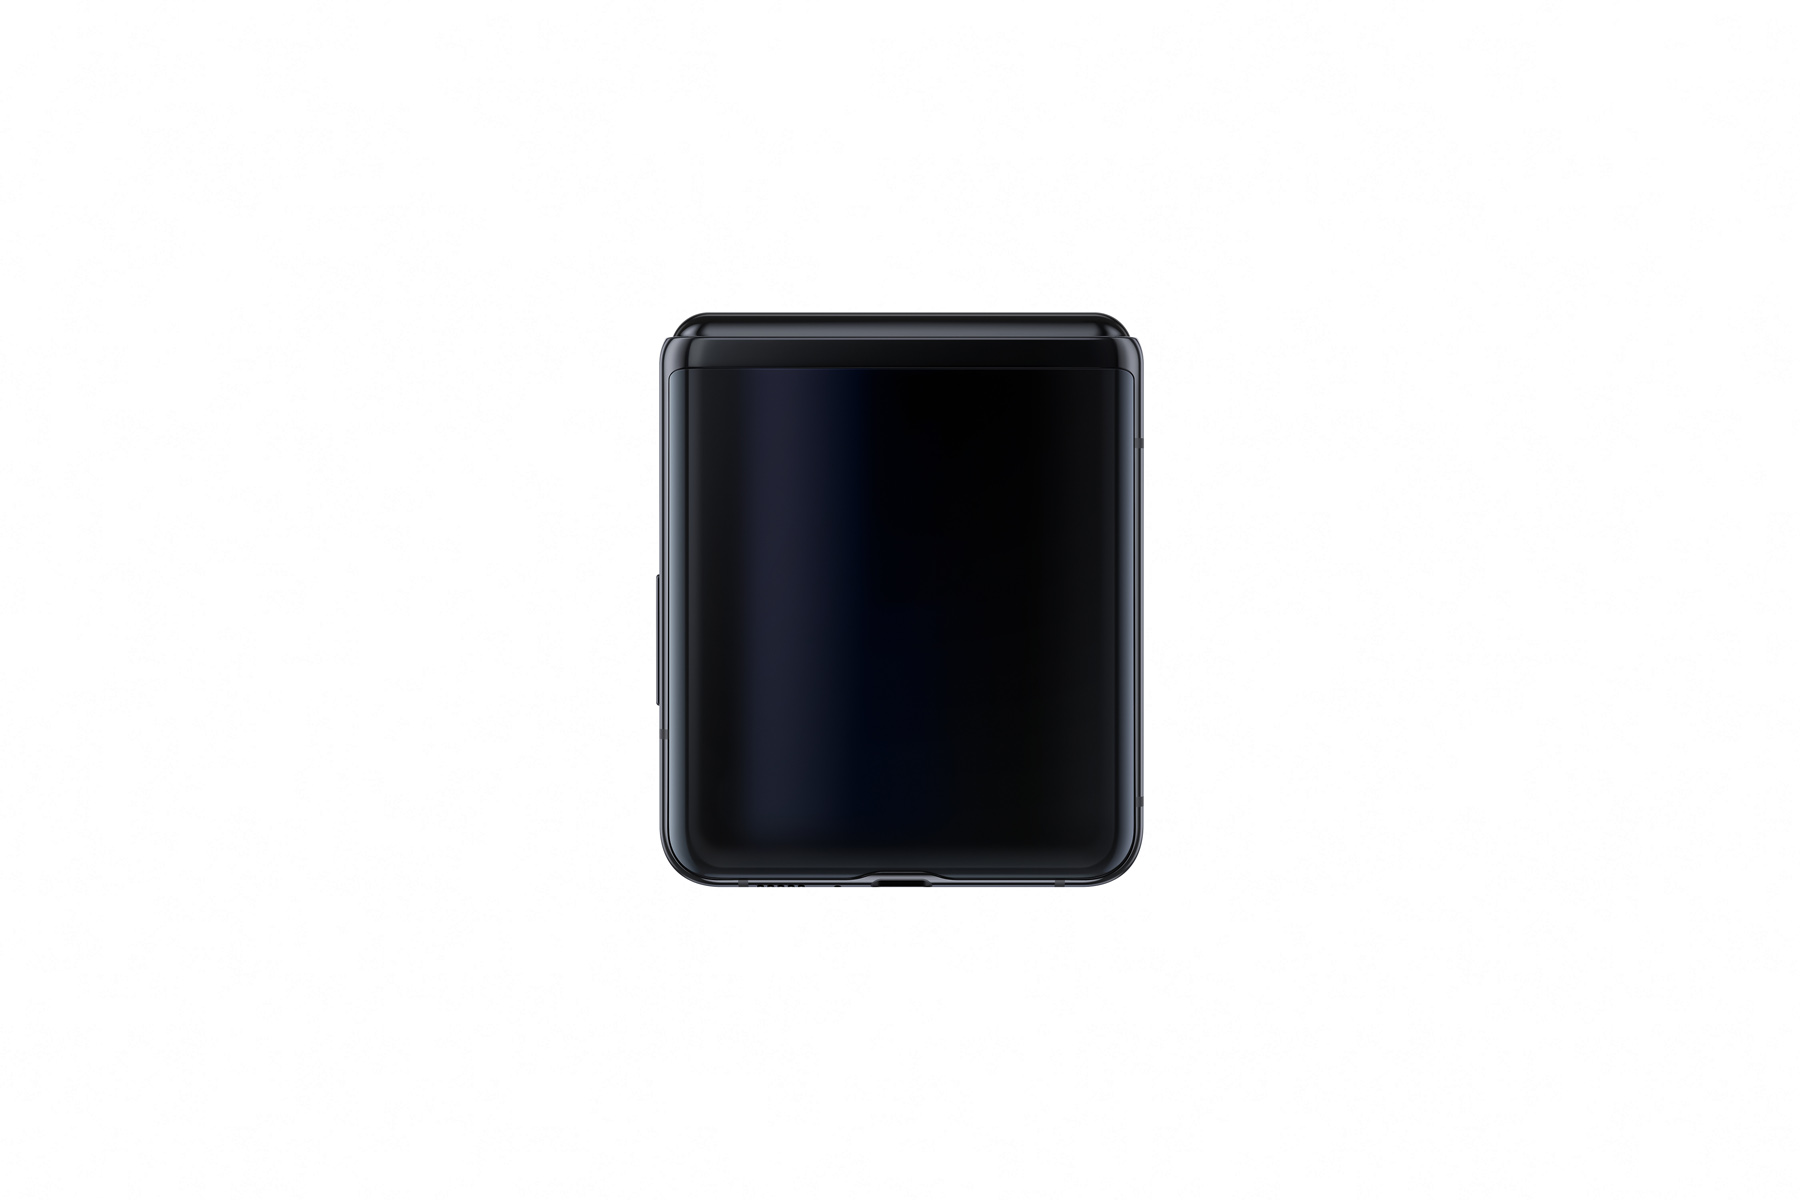 Galaxy Z Flip chính thức ra mắt với màn hình gập
theo chiều dọc, Snapdragon 855+, giá 32.1 trệu